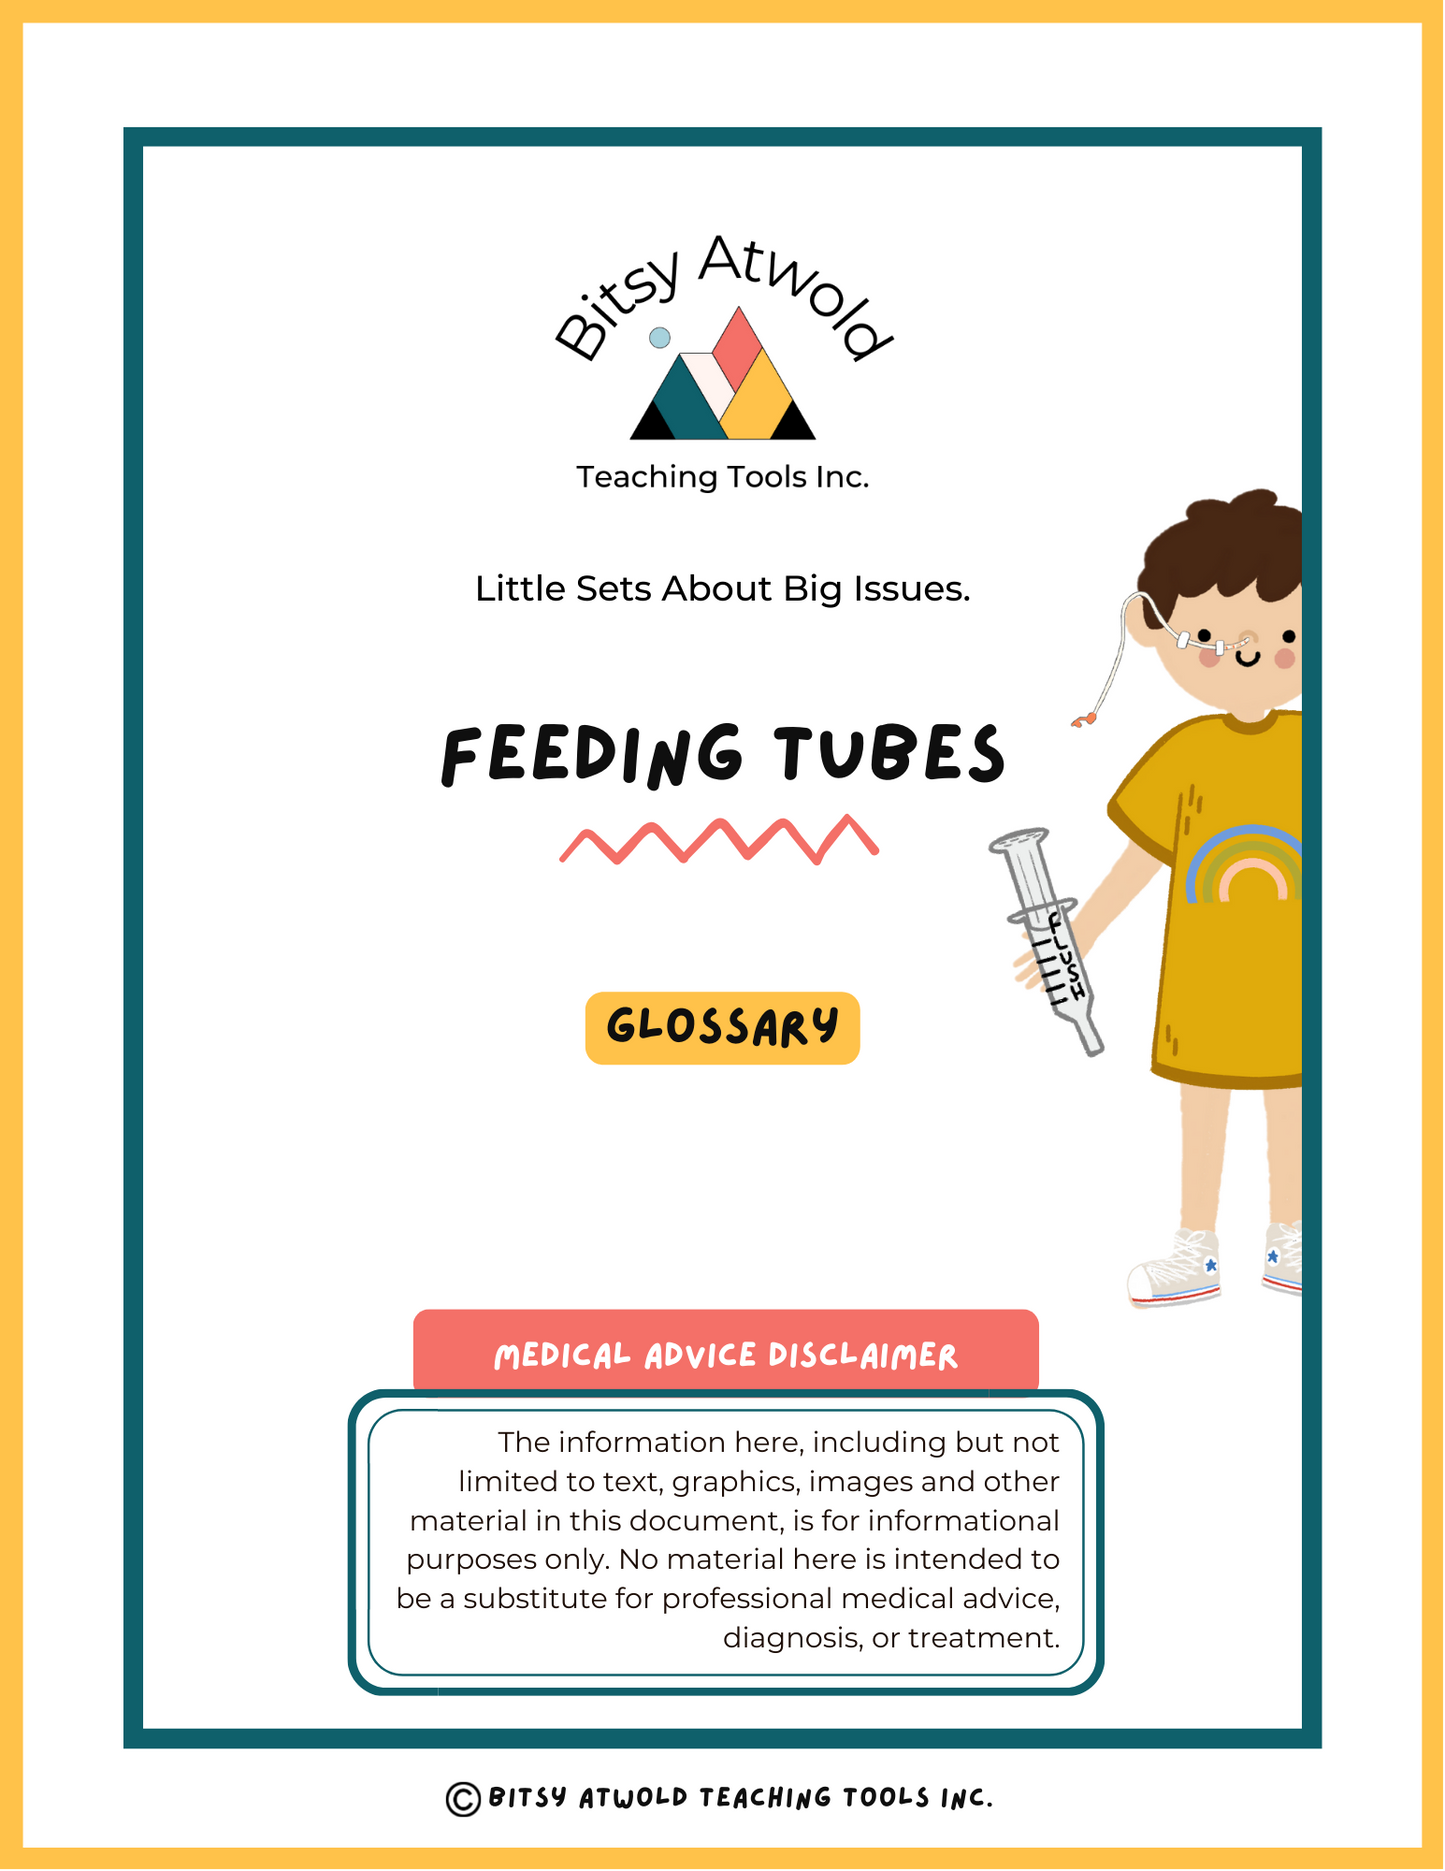 Glossary - Feeding Tubes